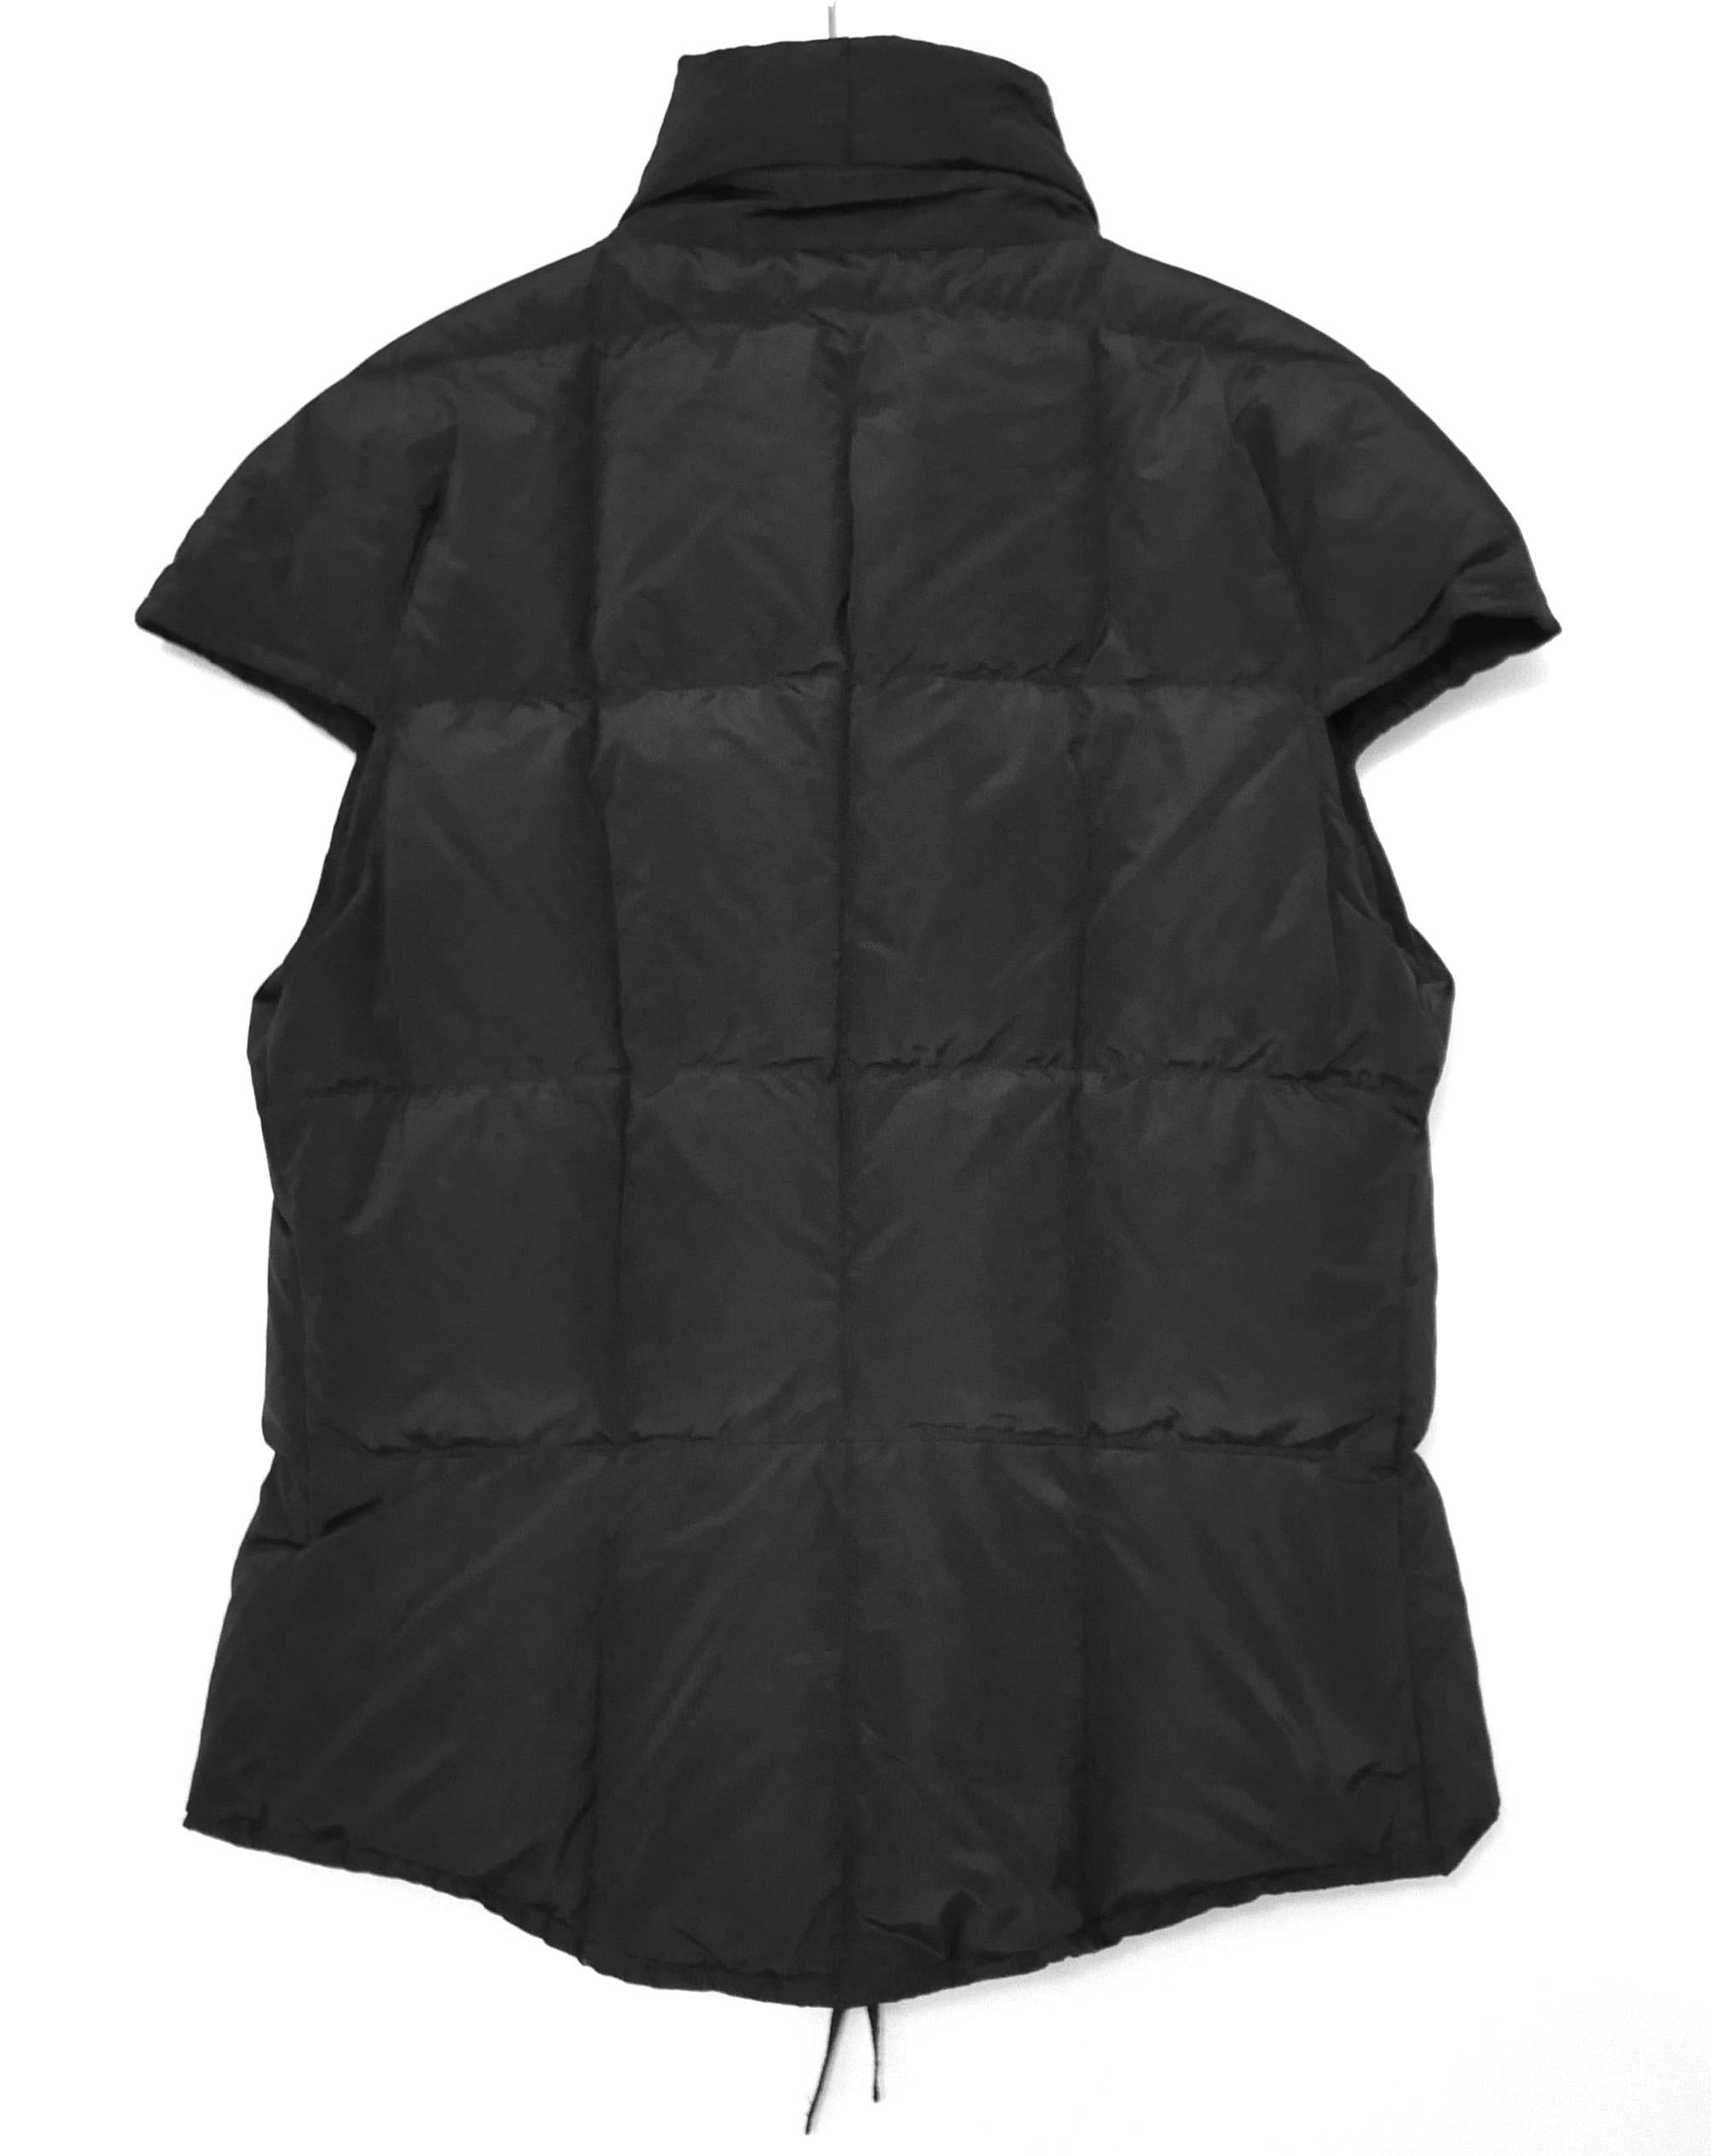 Yves Saint Laurent x Stefano Pilati 2009 Sleeveless Puffer Jacket  For Sale 1